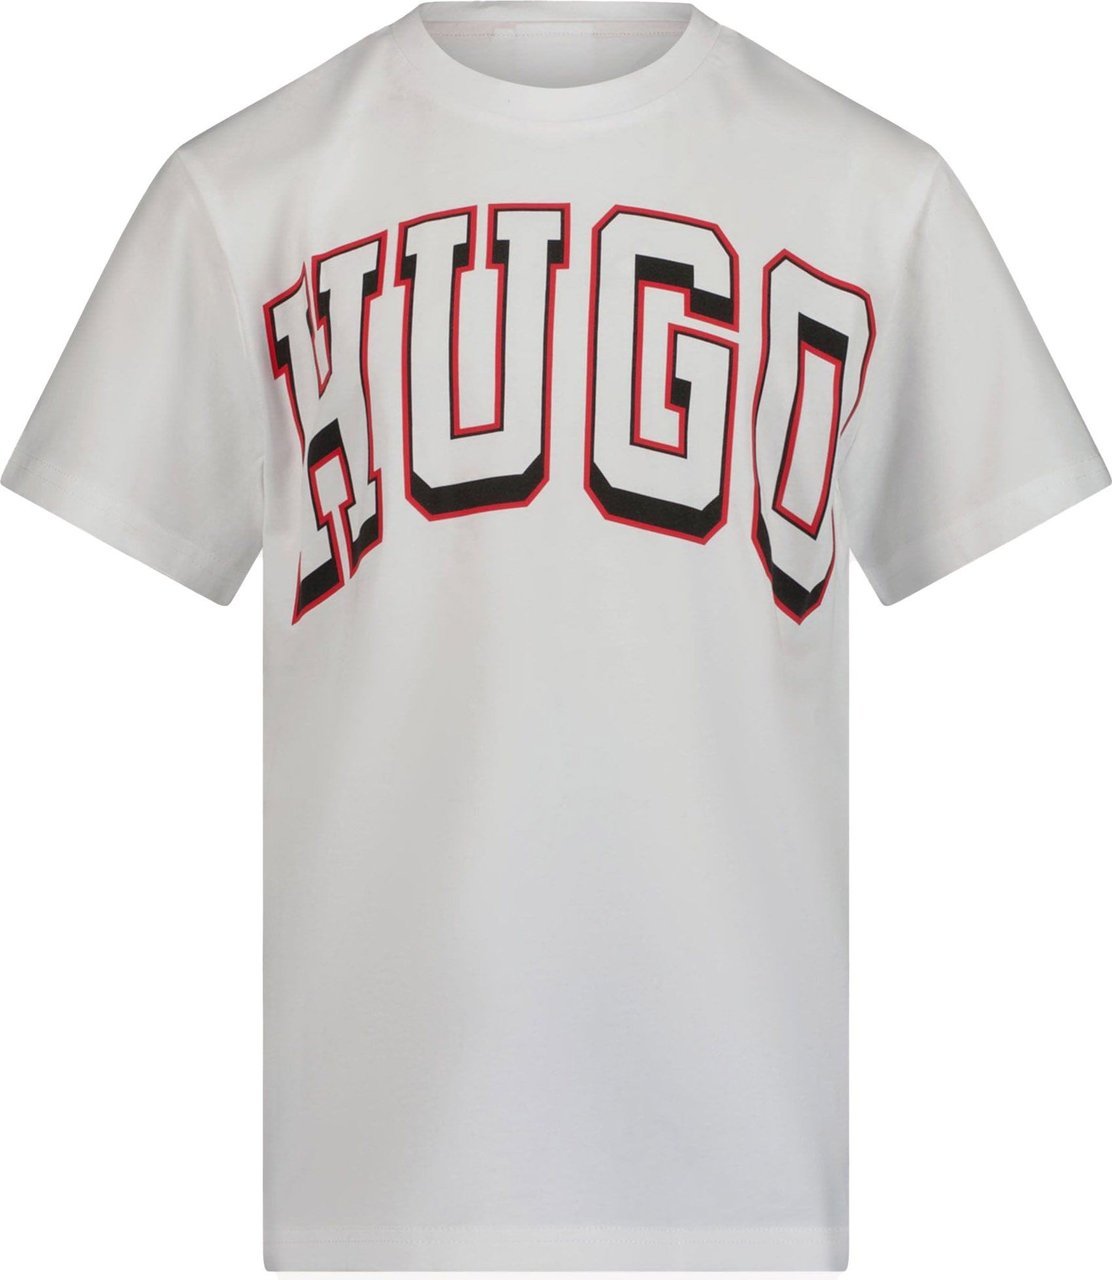 Hugo Boss HUGO Kinder Jongens T-Shirt Wit Wit